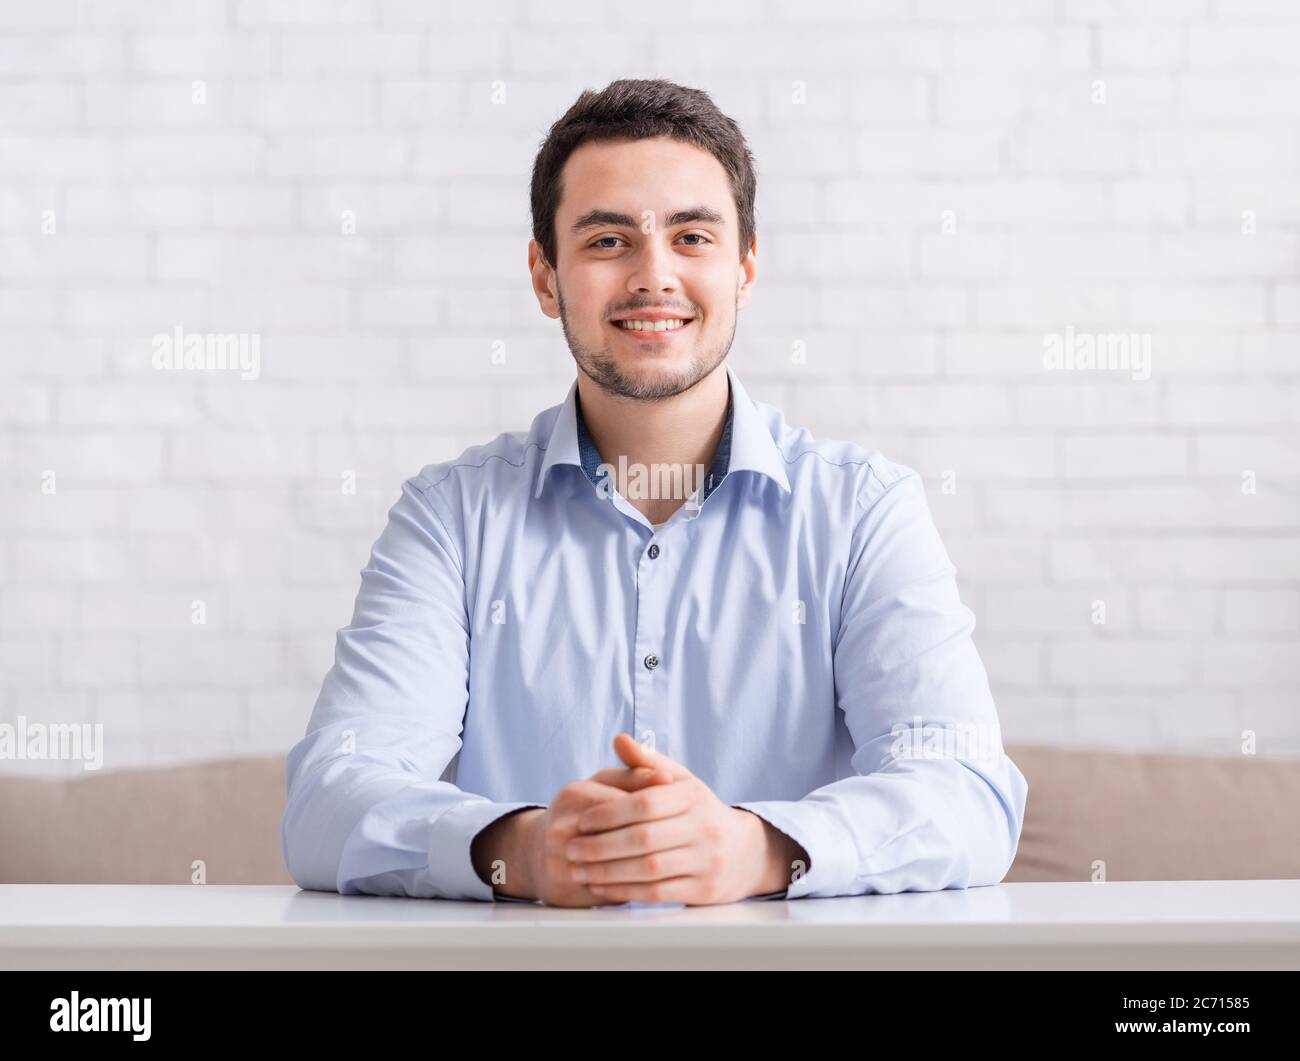 Riunioni online e lavoro da casa. Ragazzo sorridente e amichevole in camicia con le mani sul tavolo Foto Stock